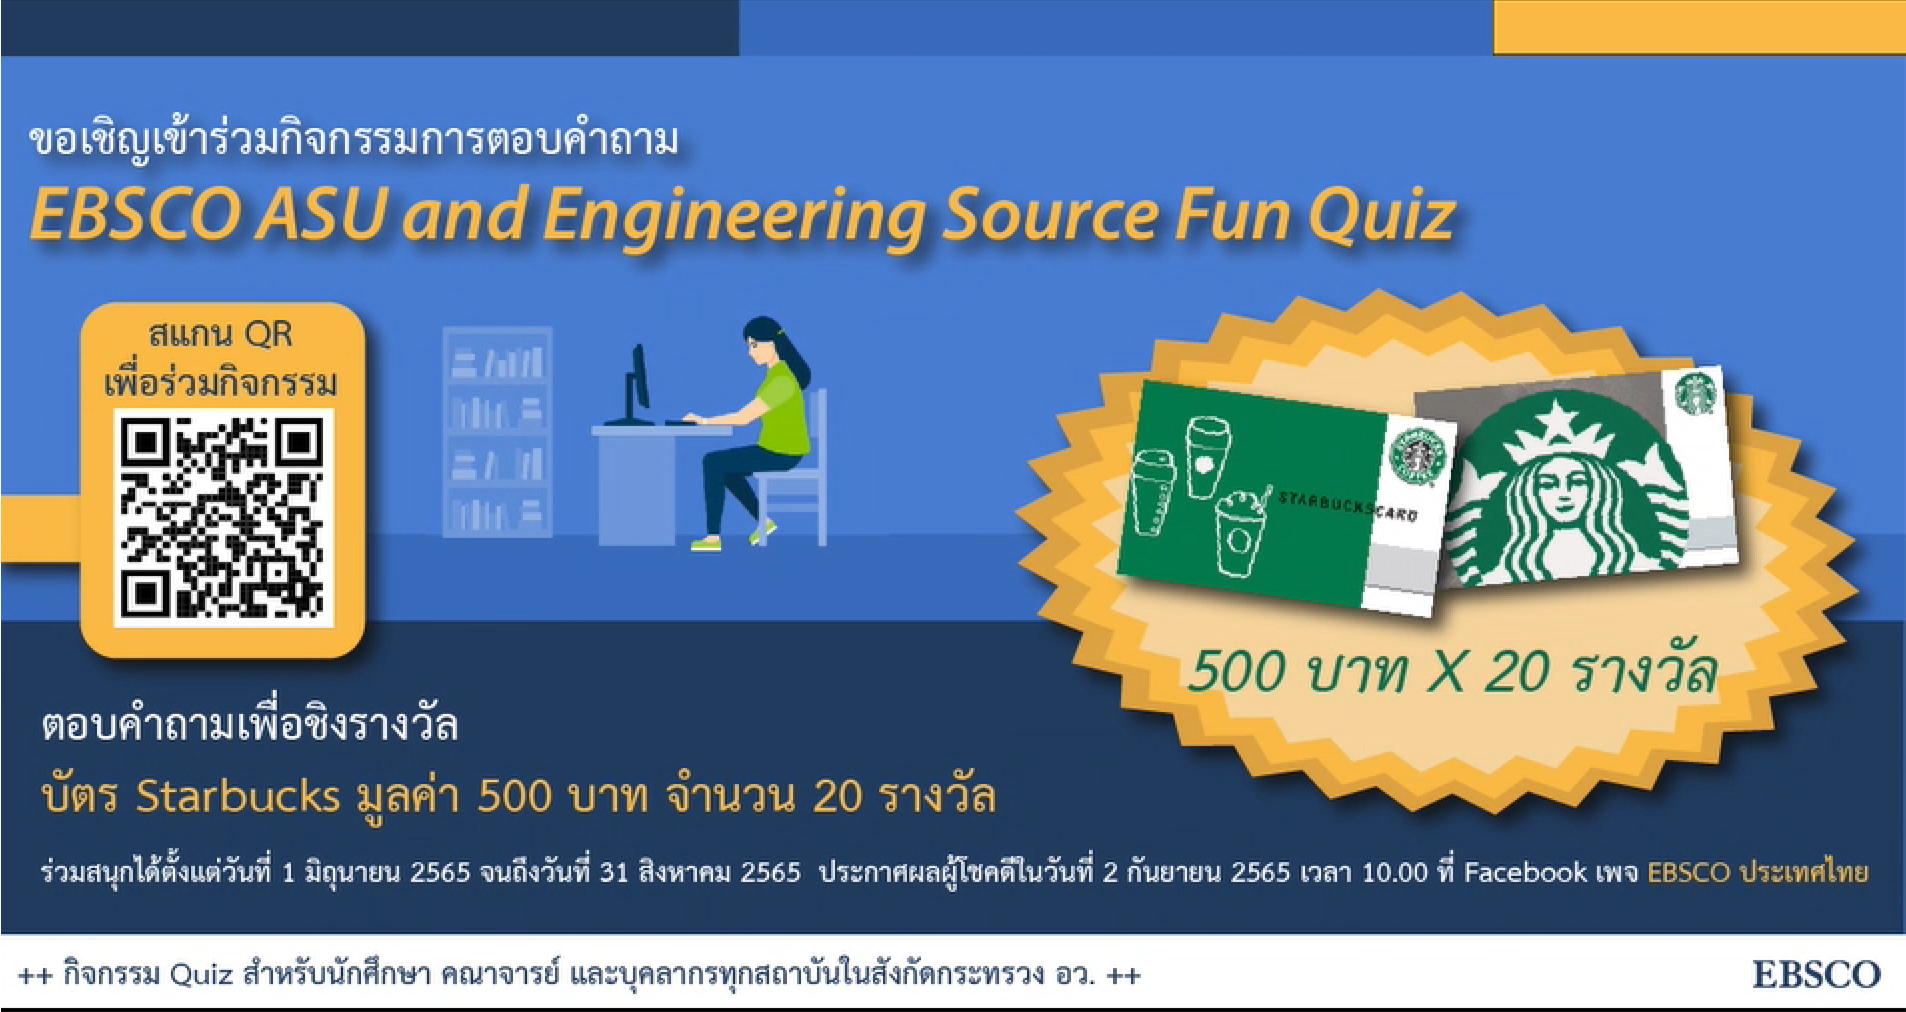 ขอเชิญ นักศึกษา อาจารย์ และบุคลากร มหาวิทยาลัยราชภัฏเพชรบุรี เข้าร่วมกิจกรรมการตอบคำถาม "EBSCO ASU and Engineering Source Fun Quiz" 